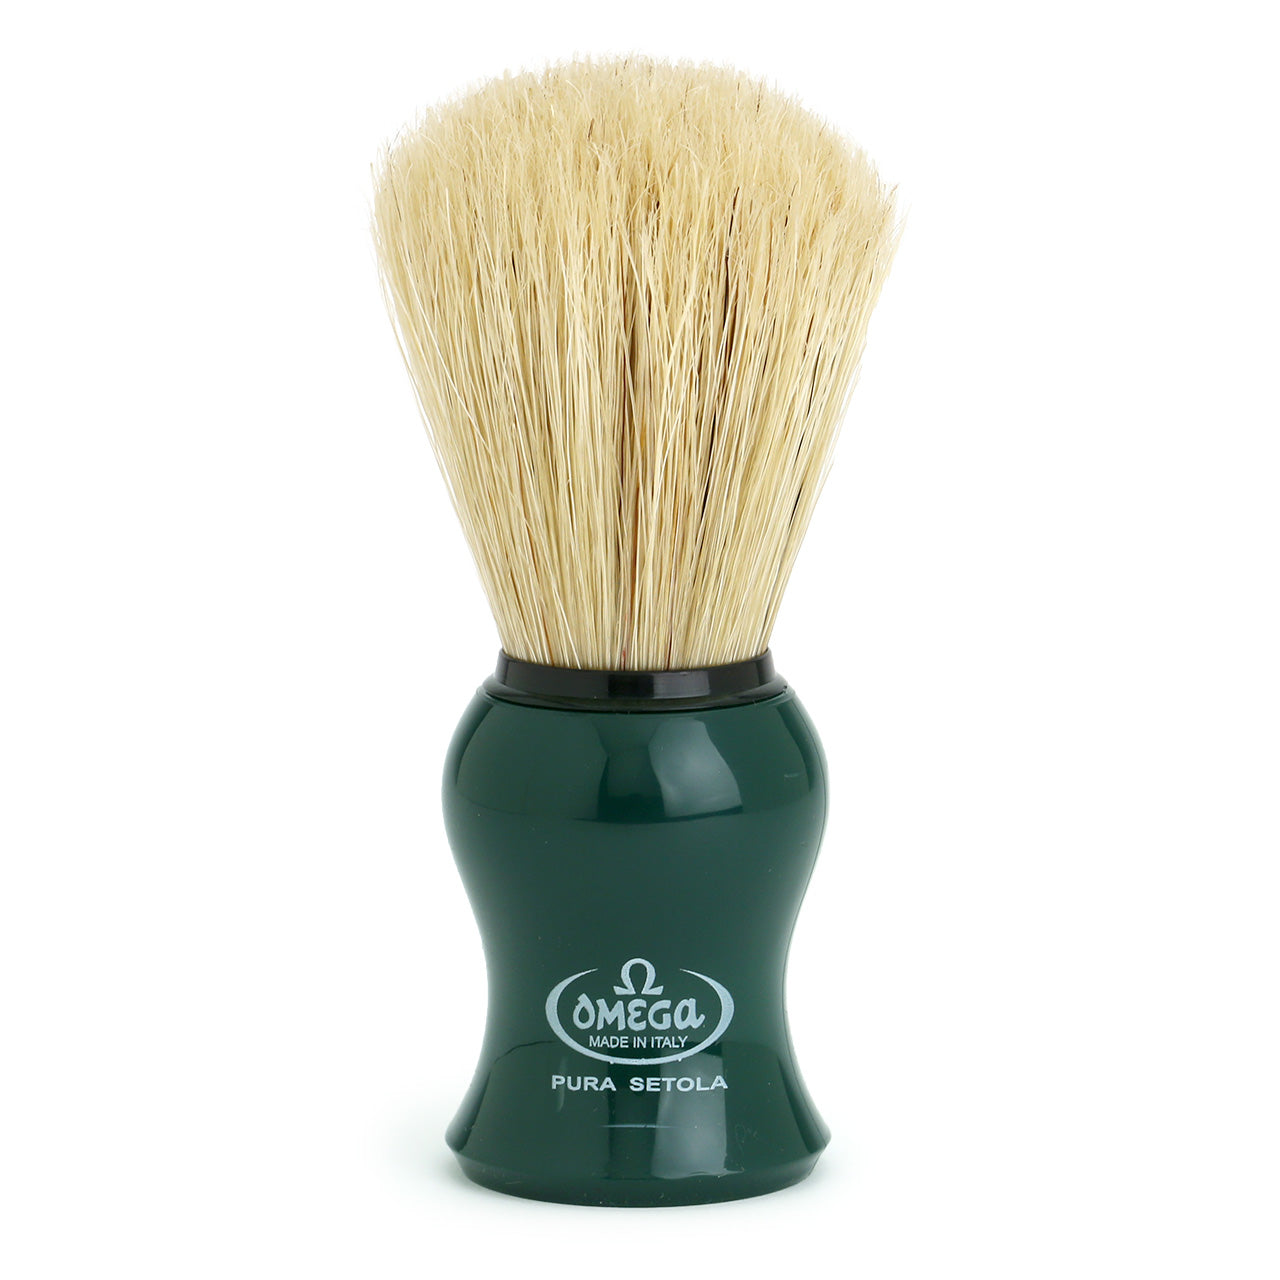 Omega Pure Bristle Shaving Brush 10065 bottle green